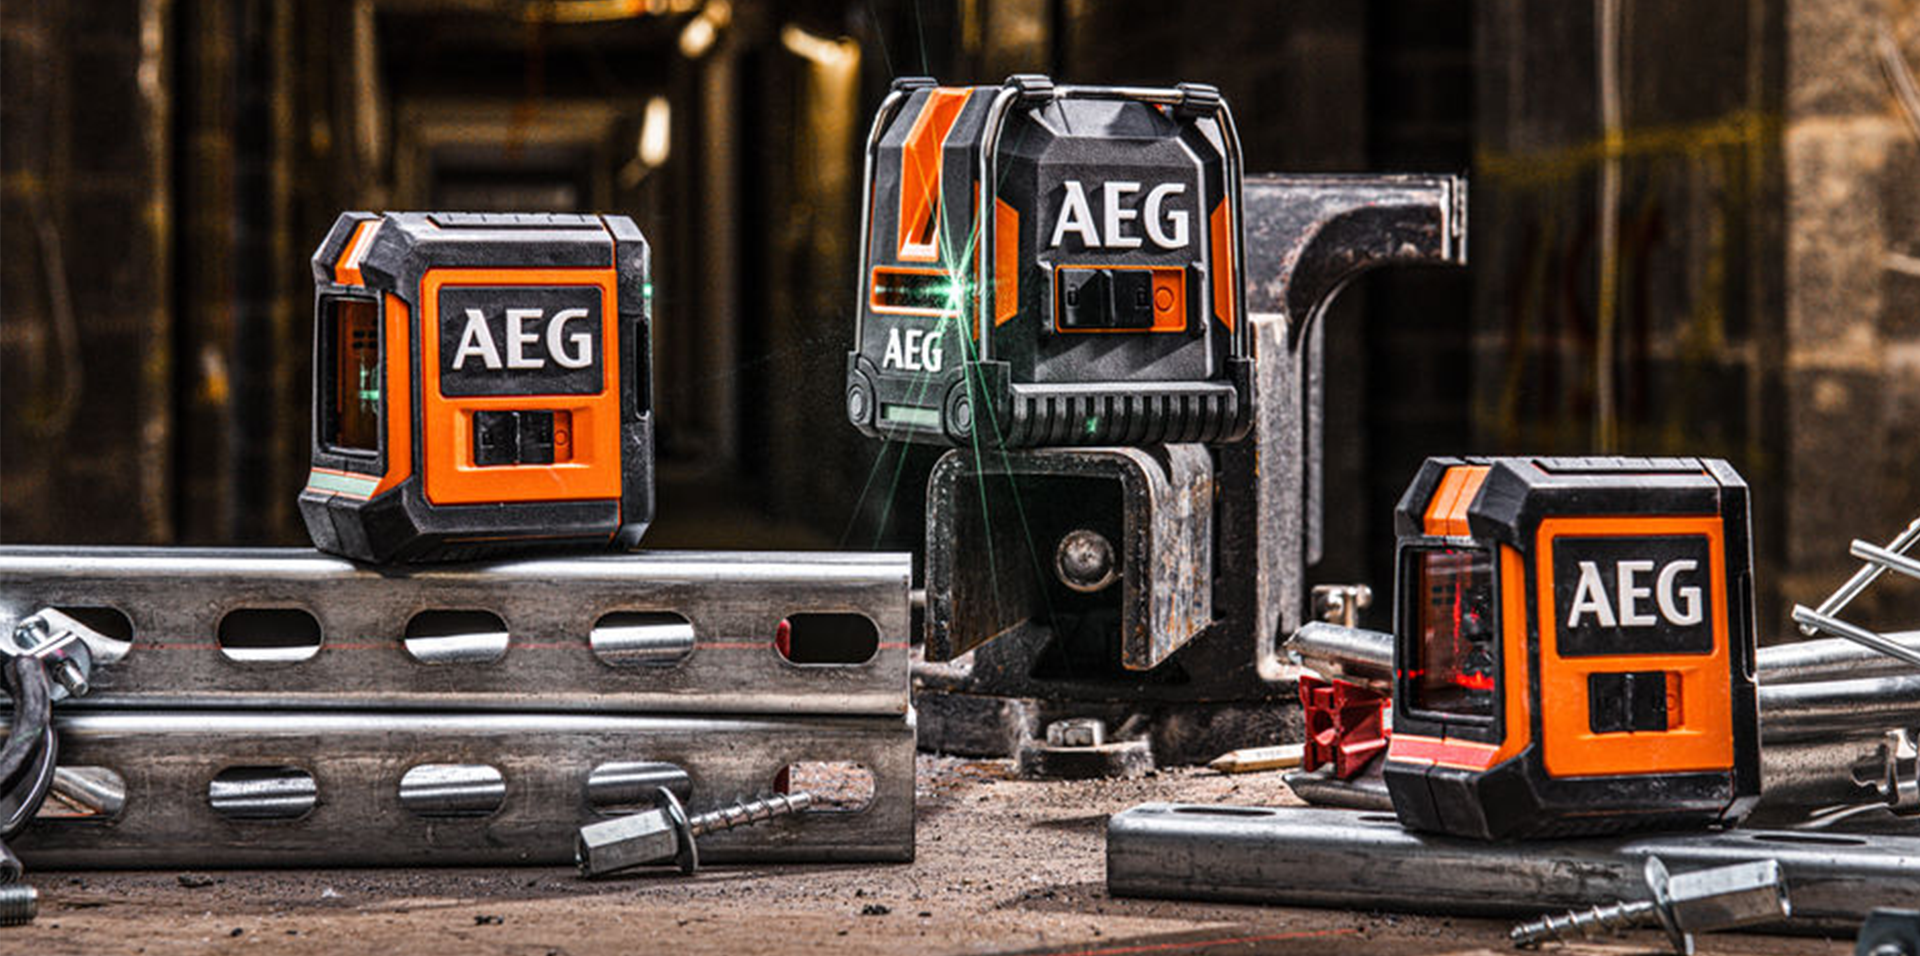 AEG - AEG Powertools - Outillage et matériel électroportatif professionnel  depuis 1898